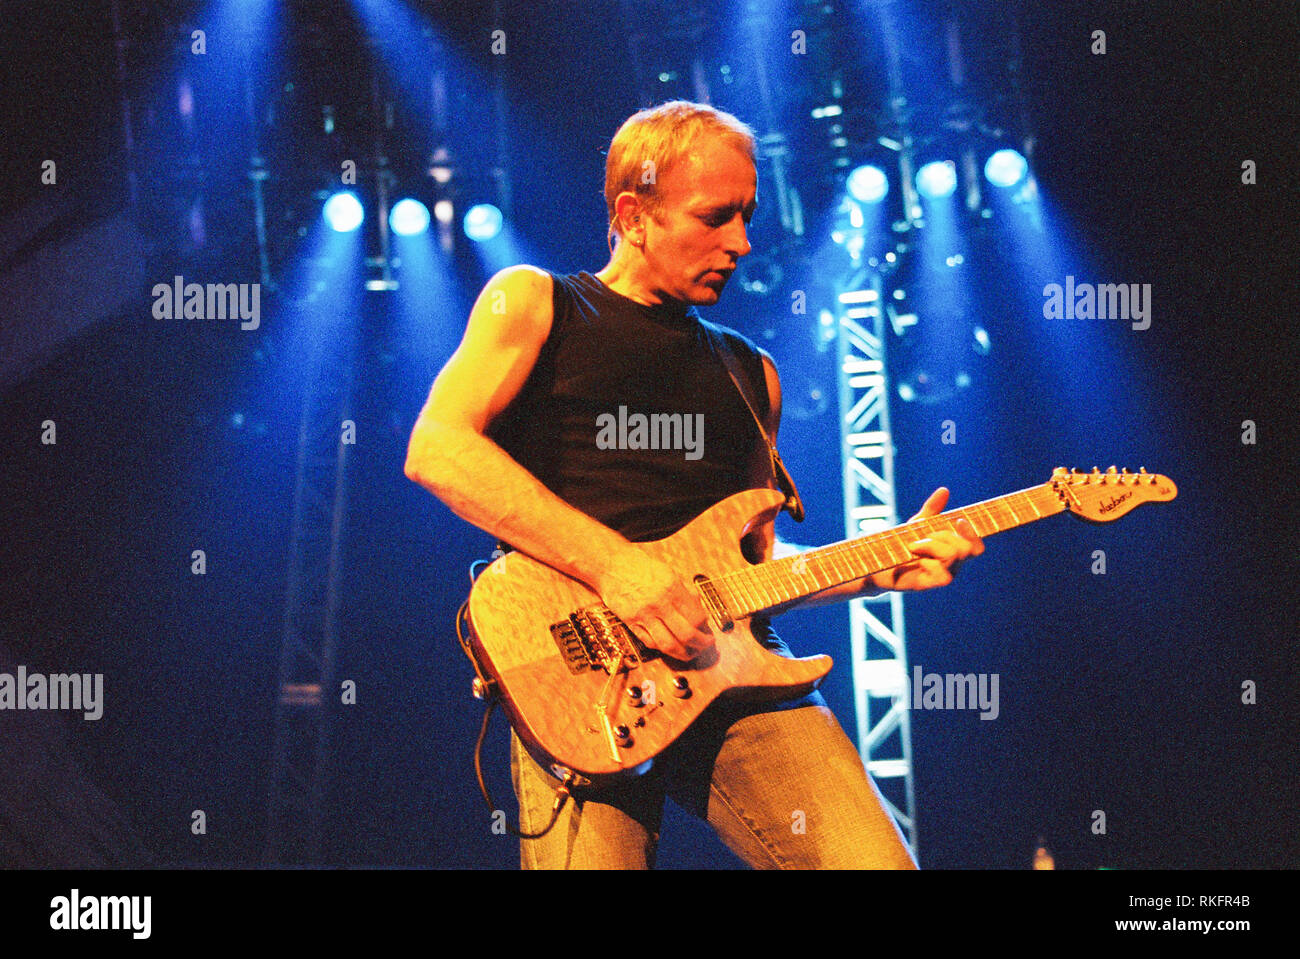 Phil Collen chitarrista solista nella banda Def Leppard esecuzione alla Brixton Academy 27 febbraio 2003, Londra, Inghilterra, Regno Unito. Foto Stock